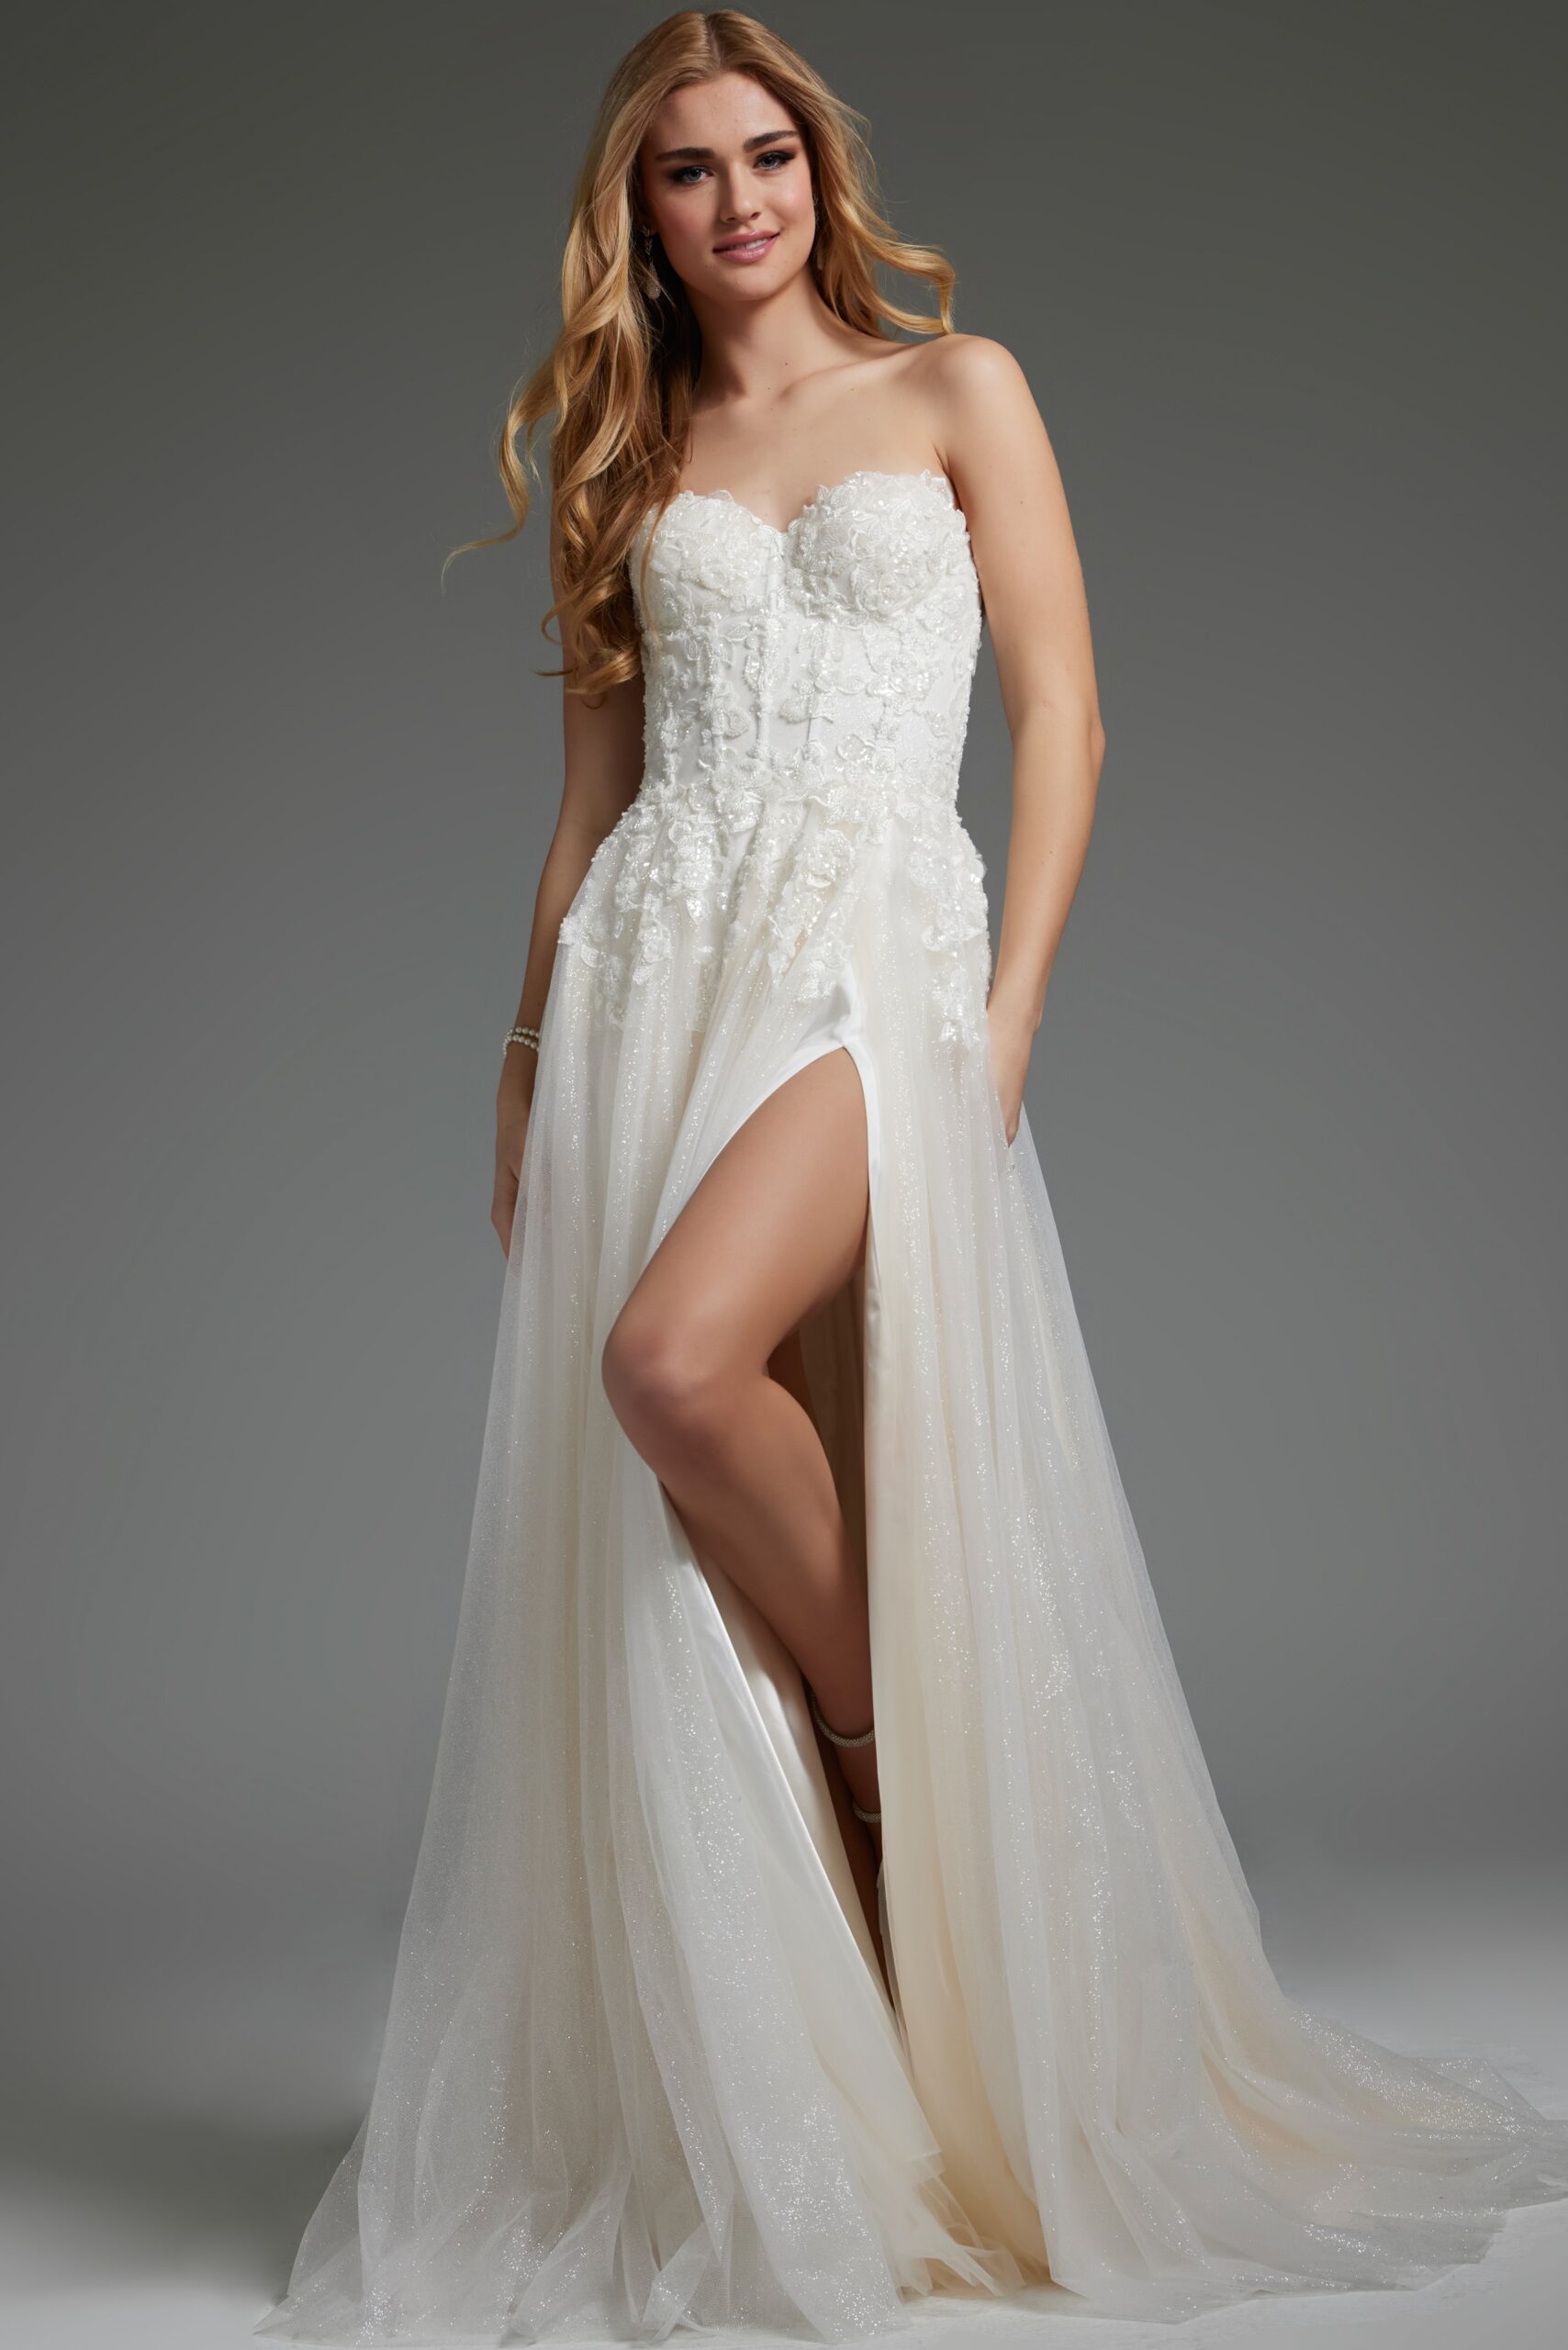 Off White Strapless Sweetheart Neckline Bridal Dress JB25730